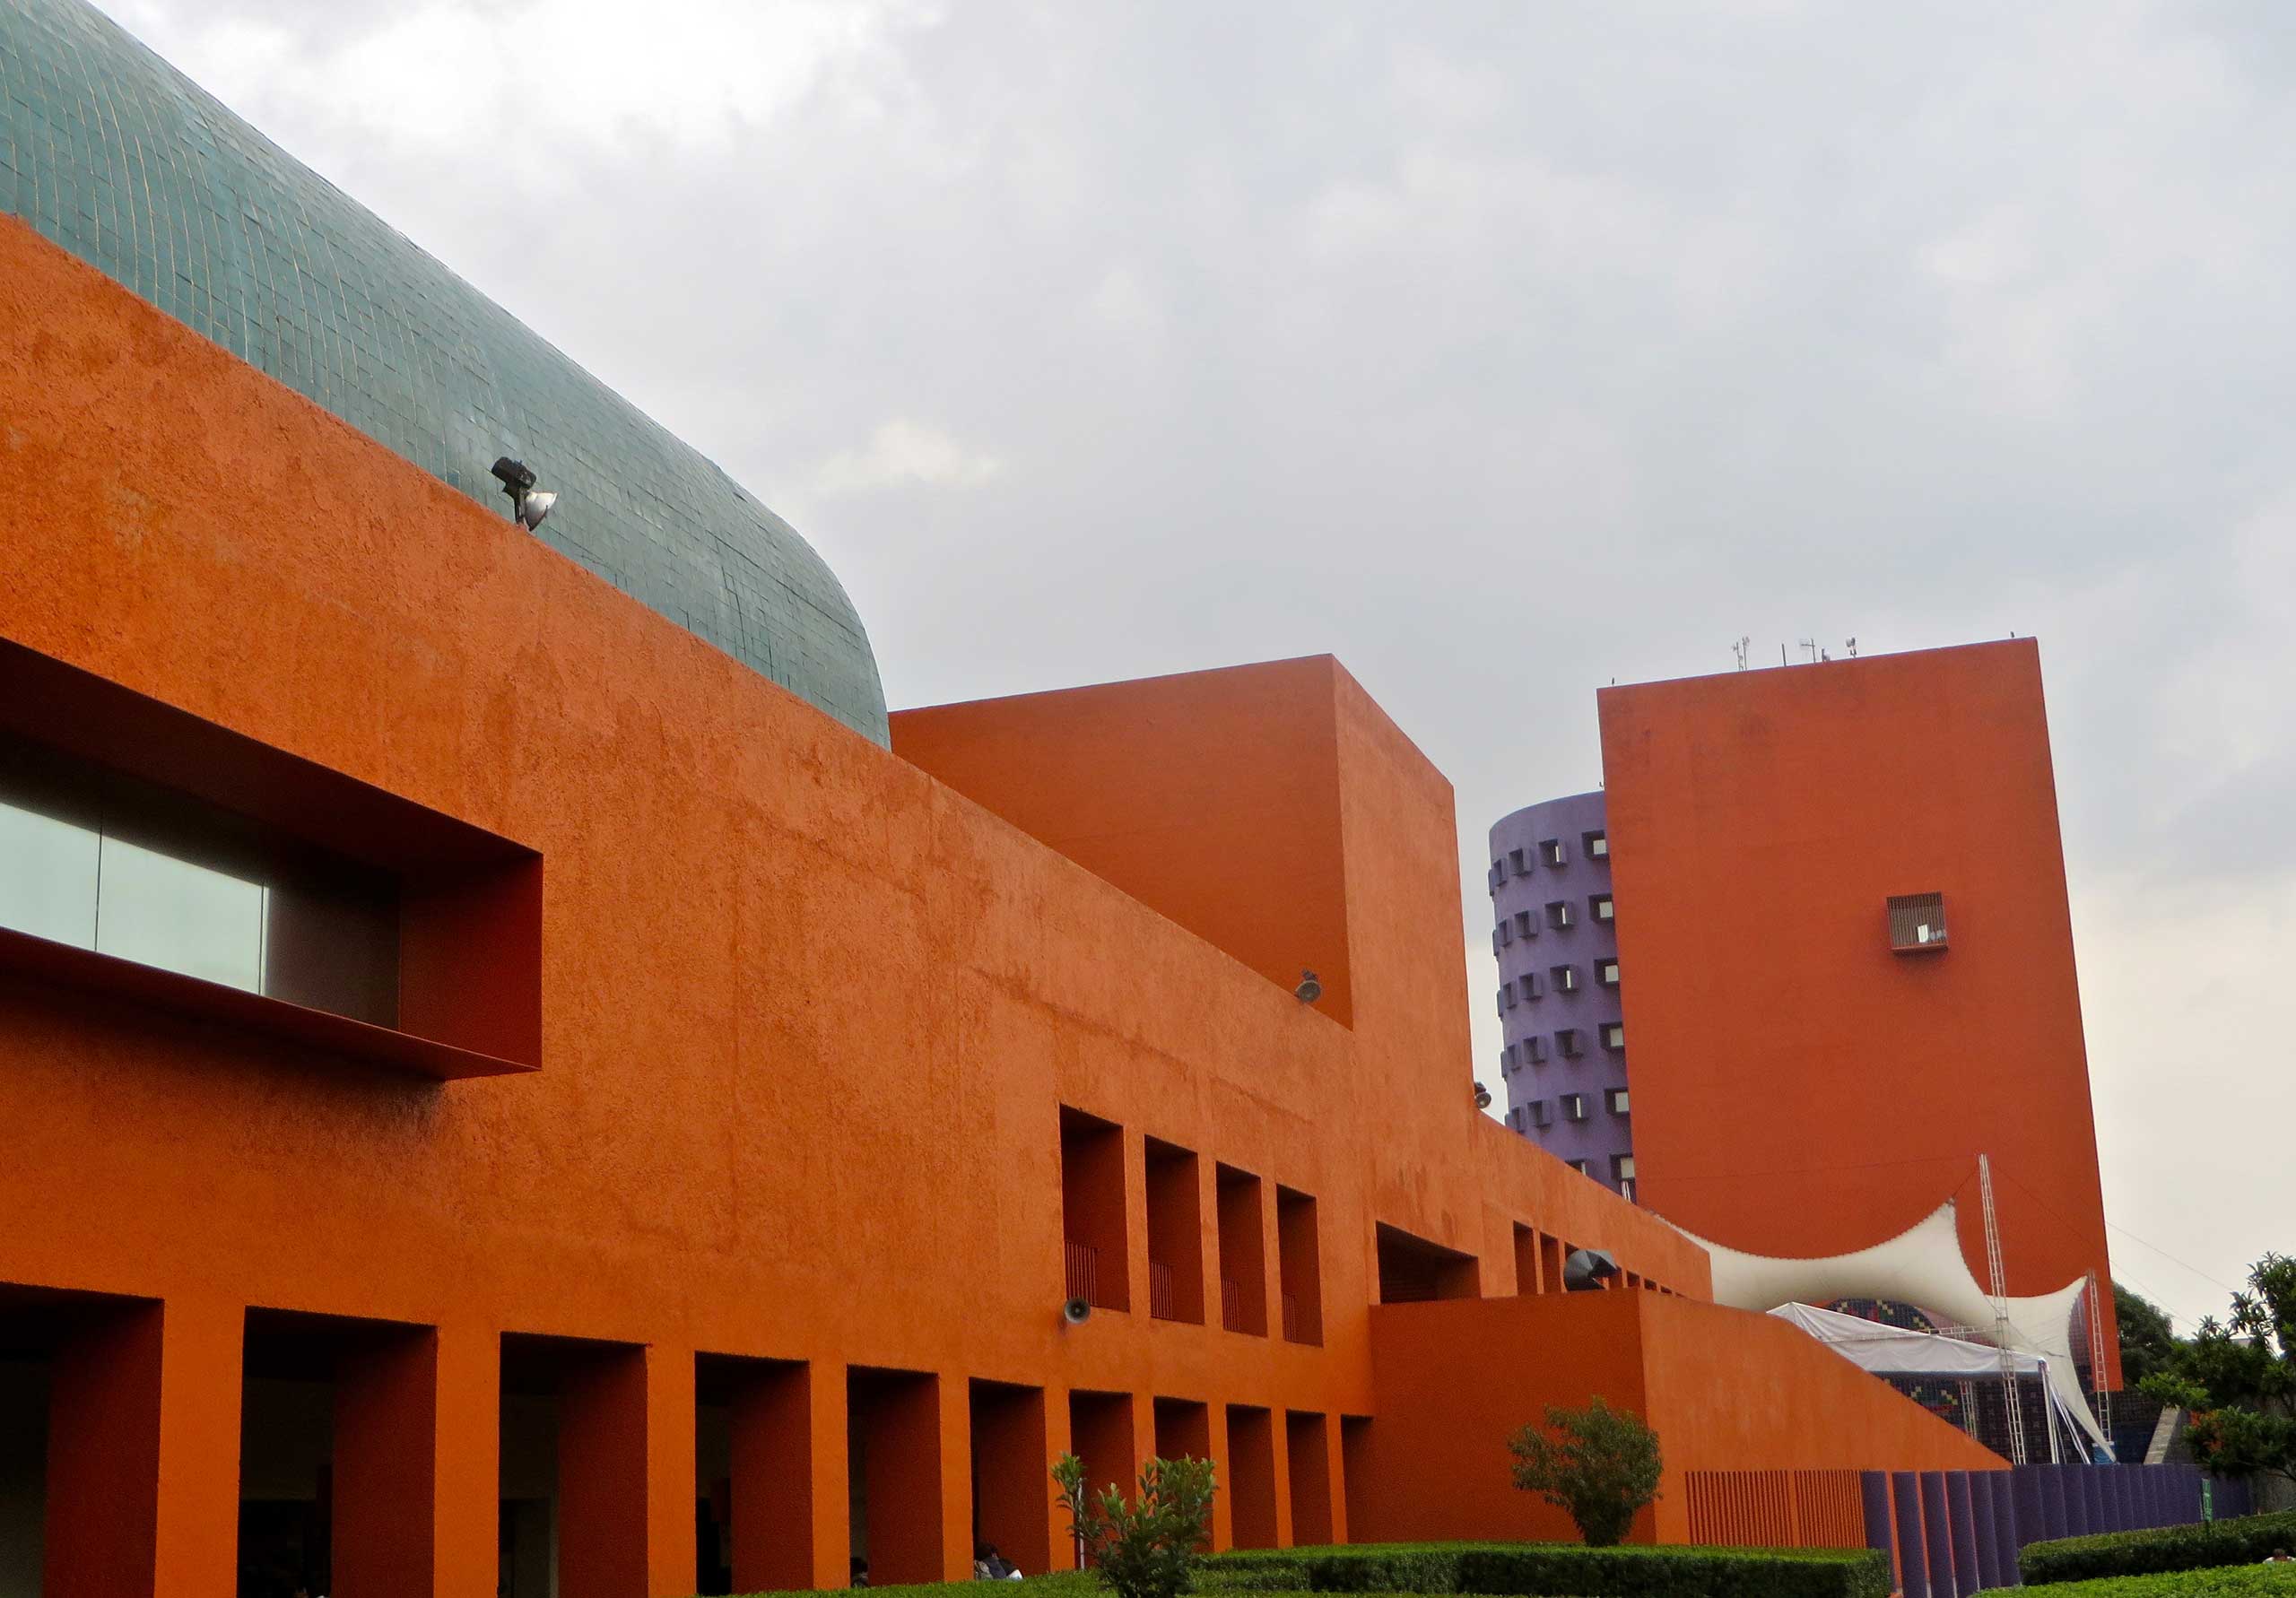 Centro Nacional de las Artes in Mexico City